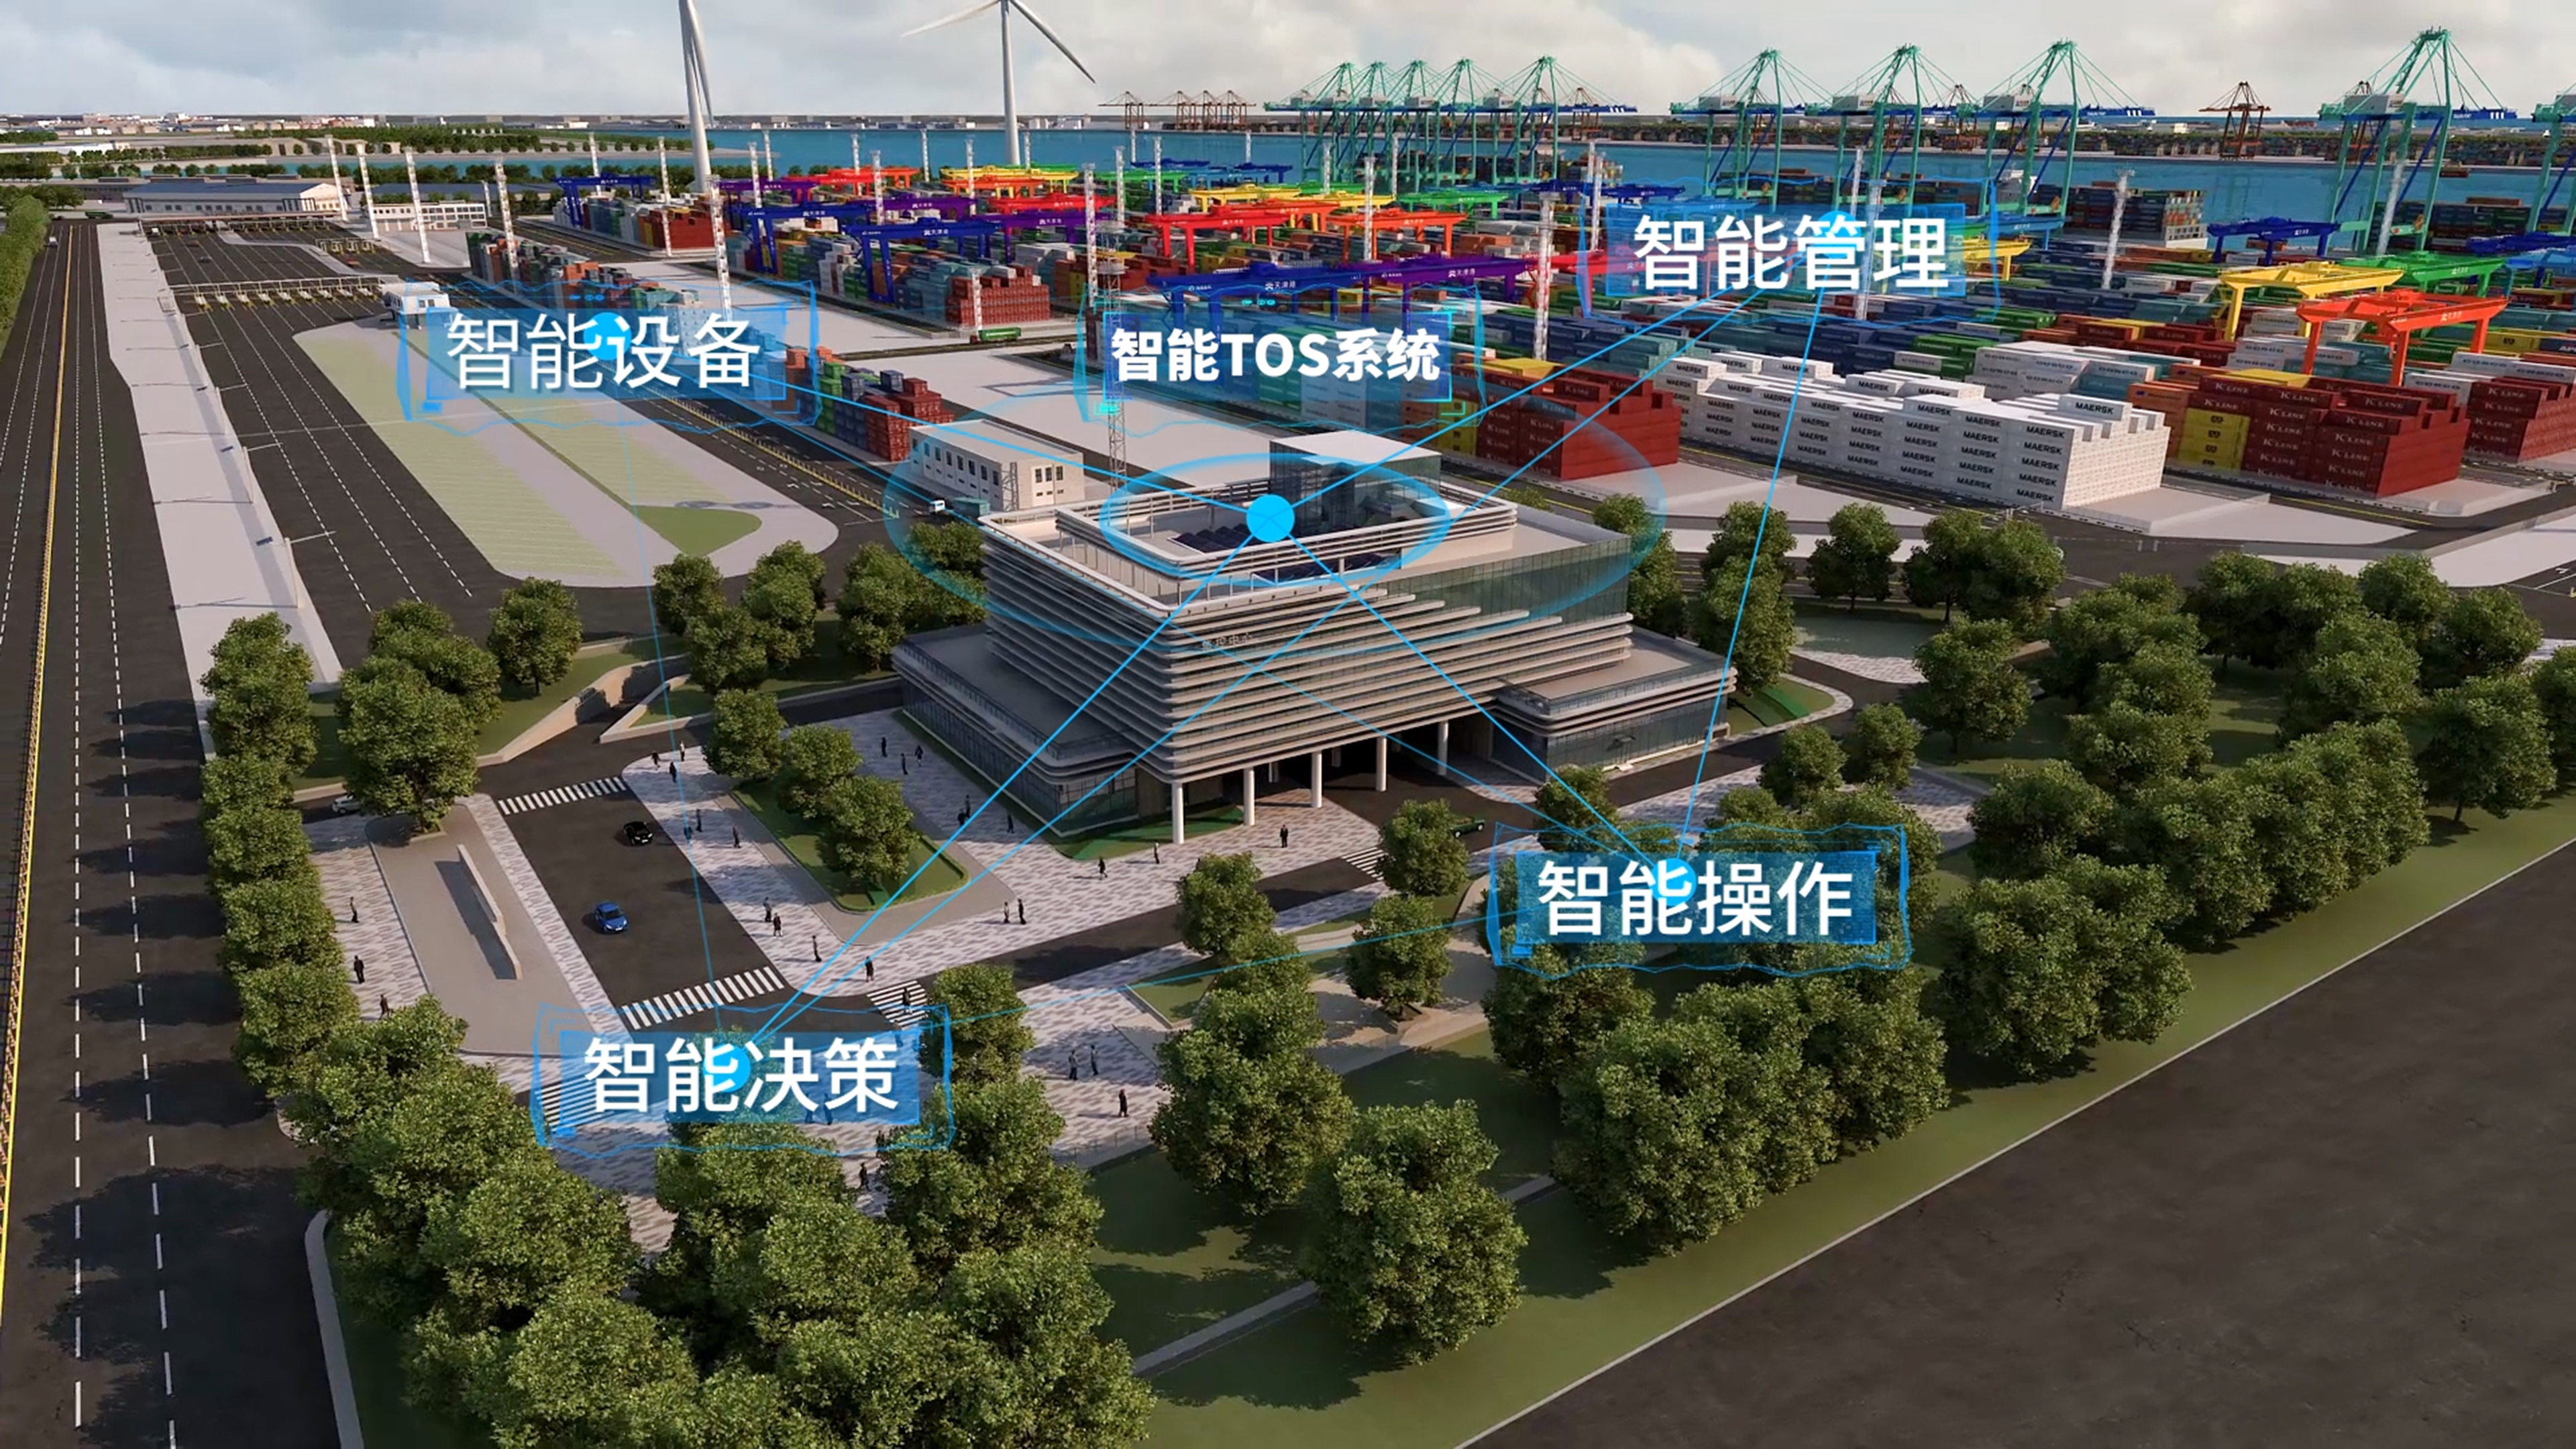 天津港北疆港区c段智能化集装箱码头项目位于欧亚码头北侧,北港池西侧